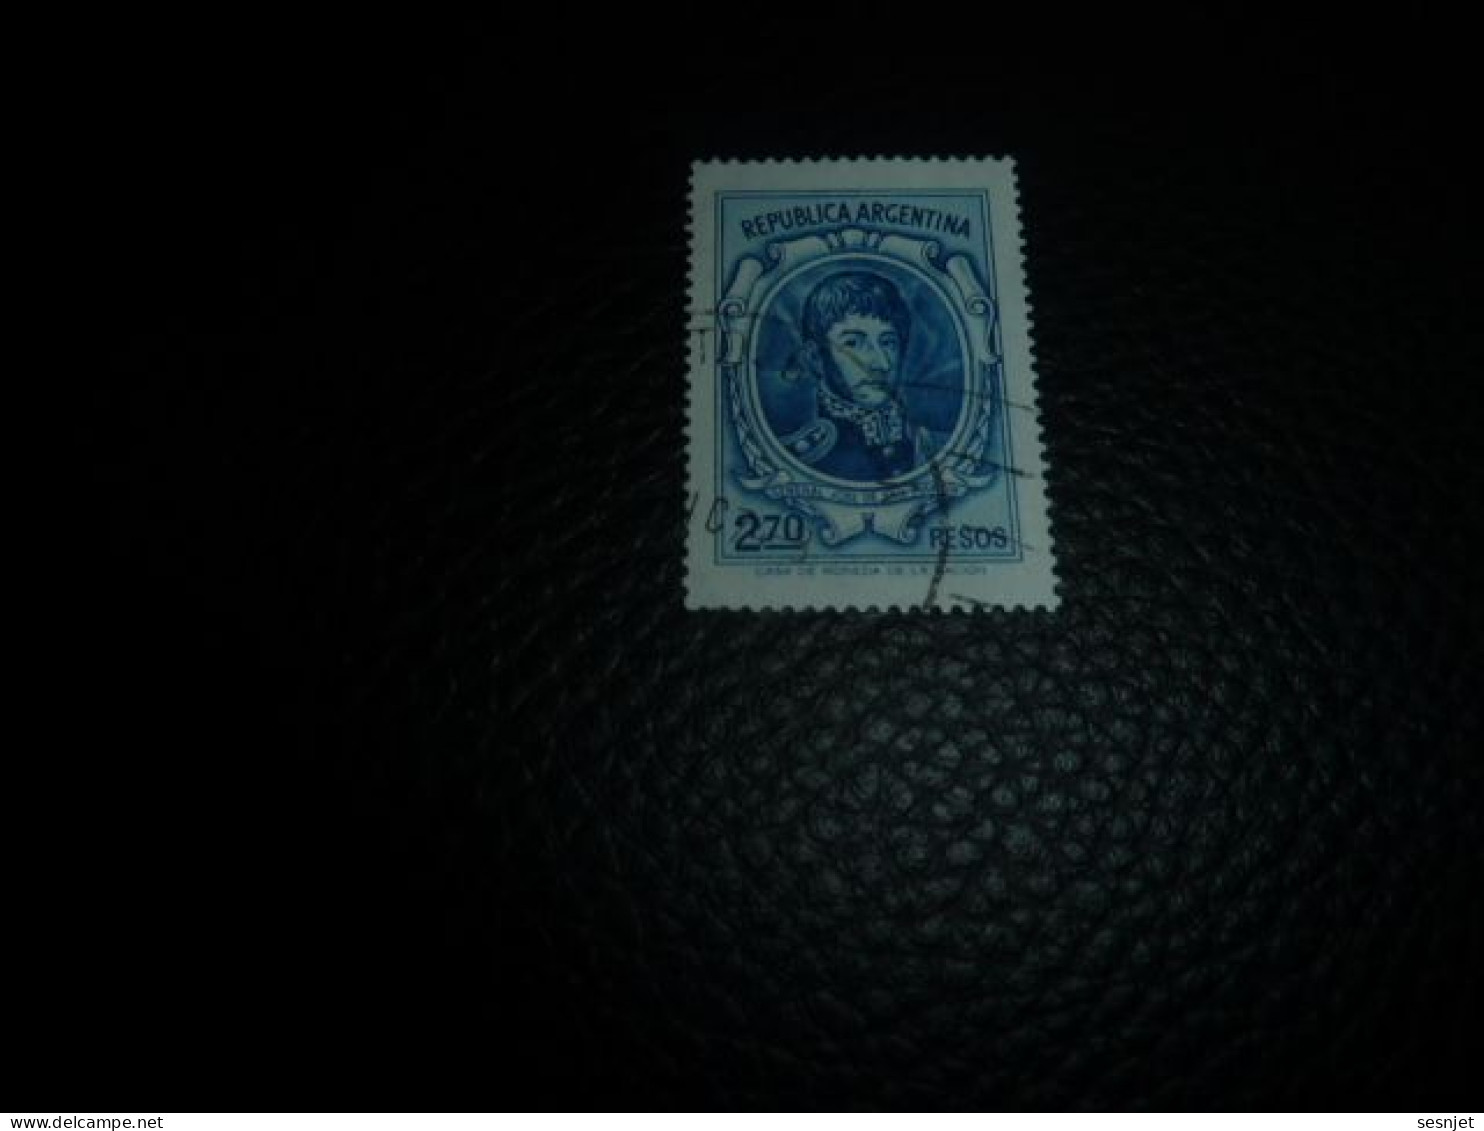 Republica Argentina - Général José De San Martin - 2.70 Pesos - Yt 975 - Bleu - Oblitéré - Année 1974 - - Gebraucht